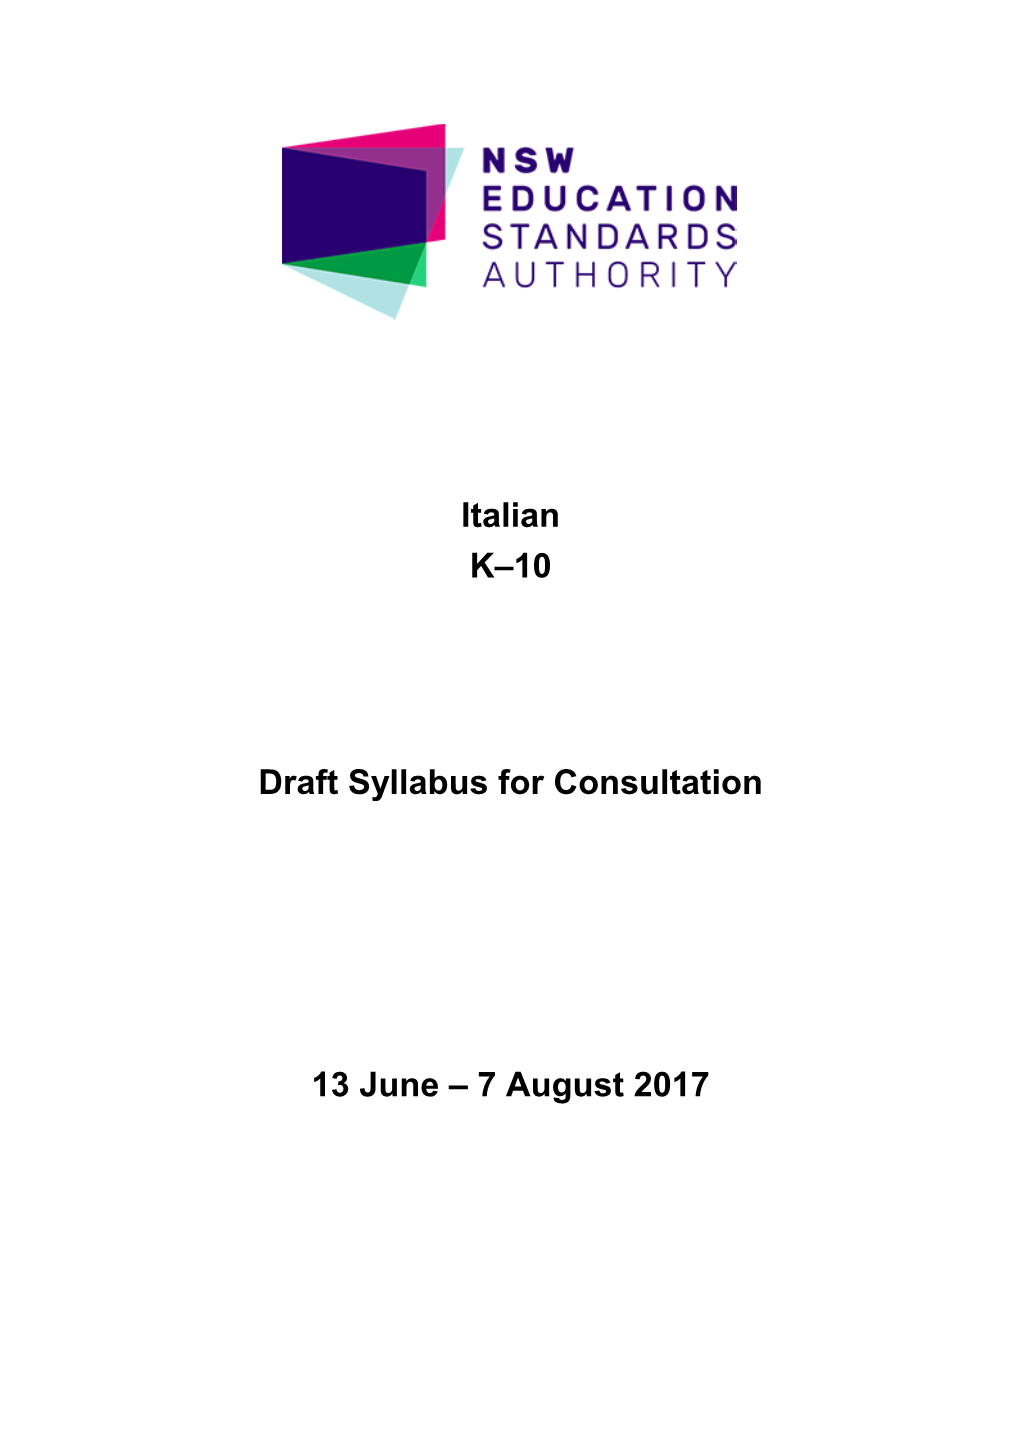 Italian K-10 Draft Syllabus for Consultation 2017